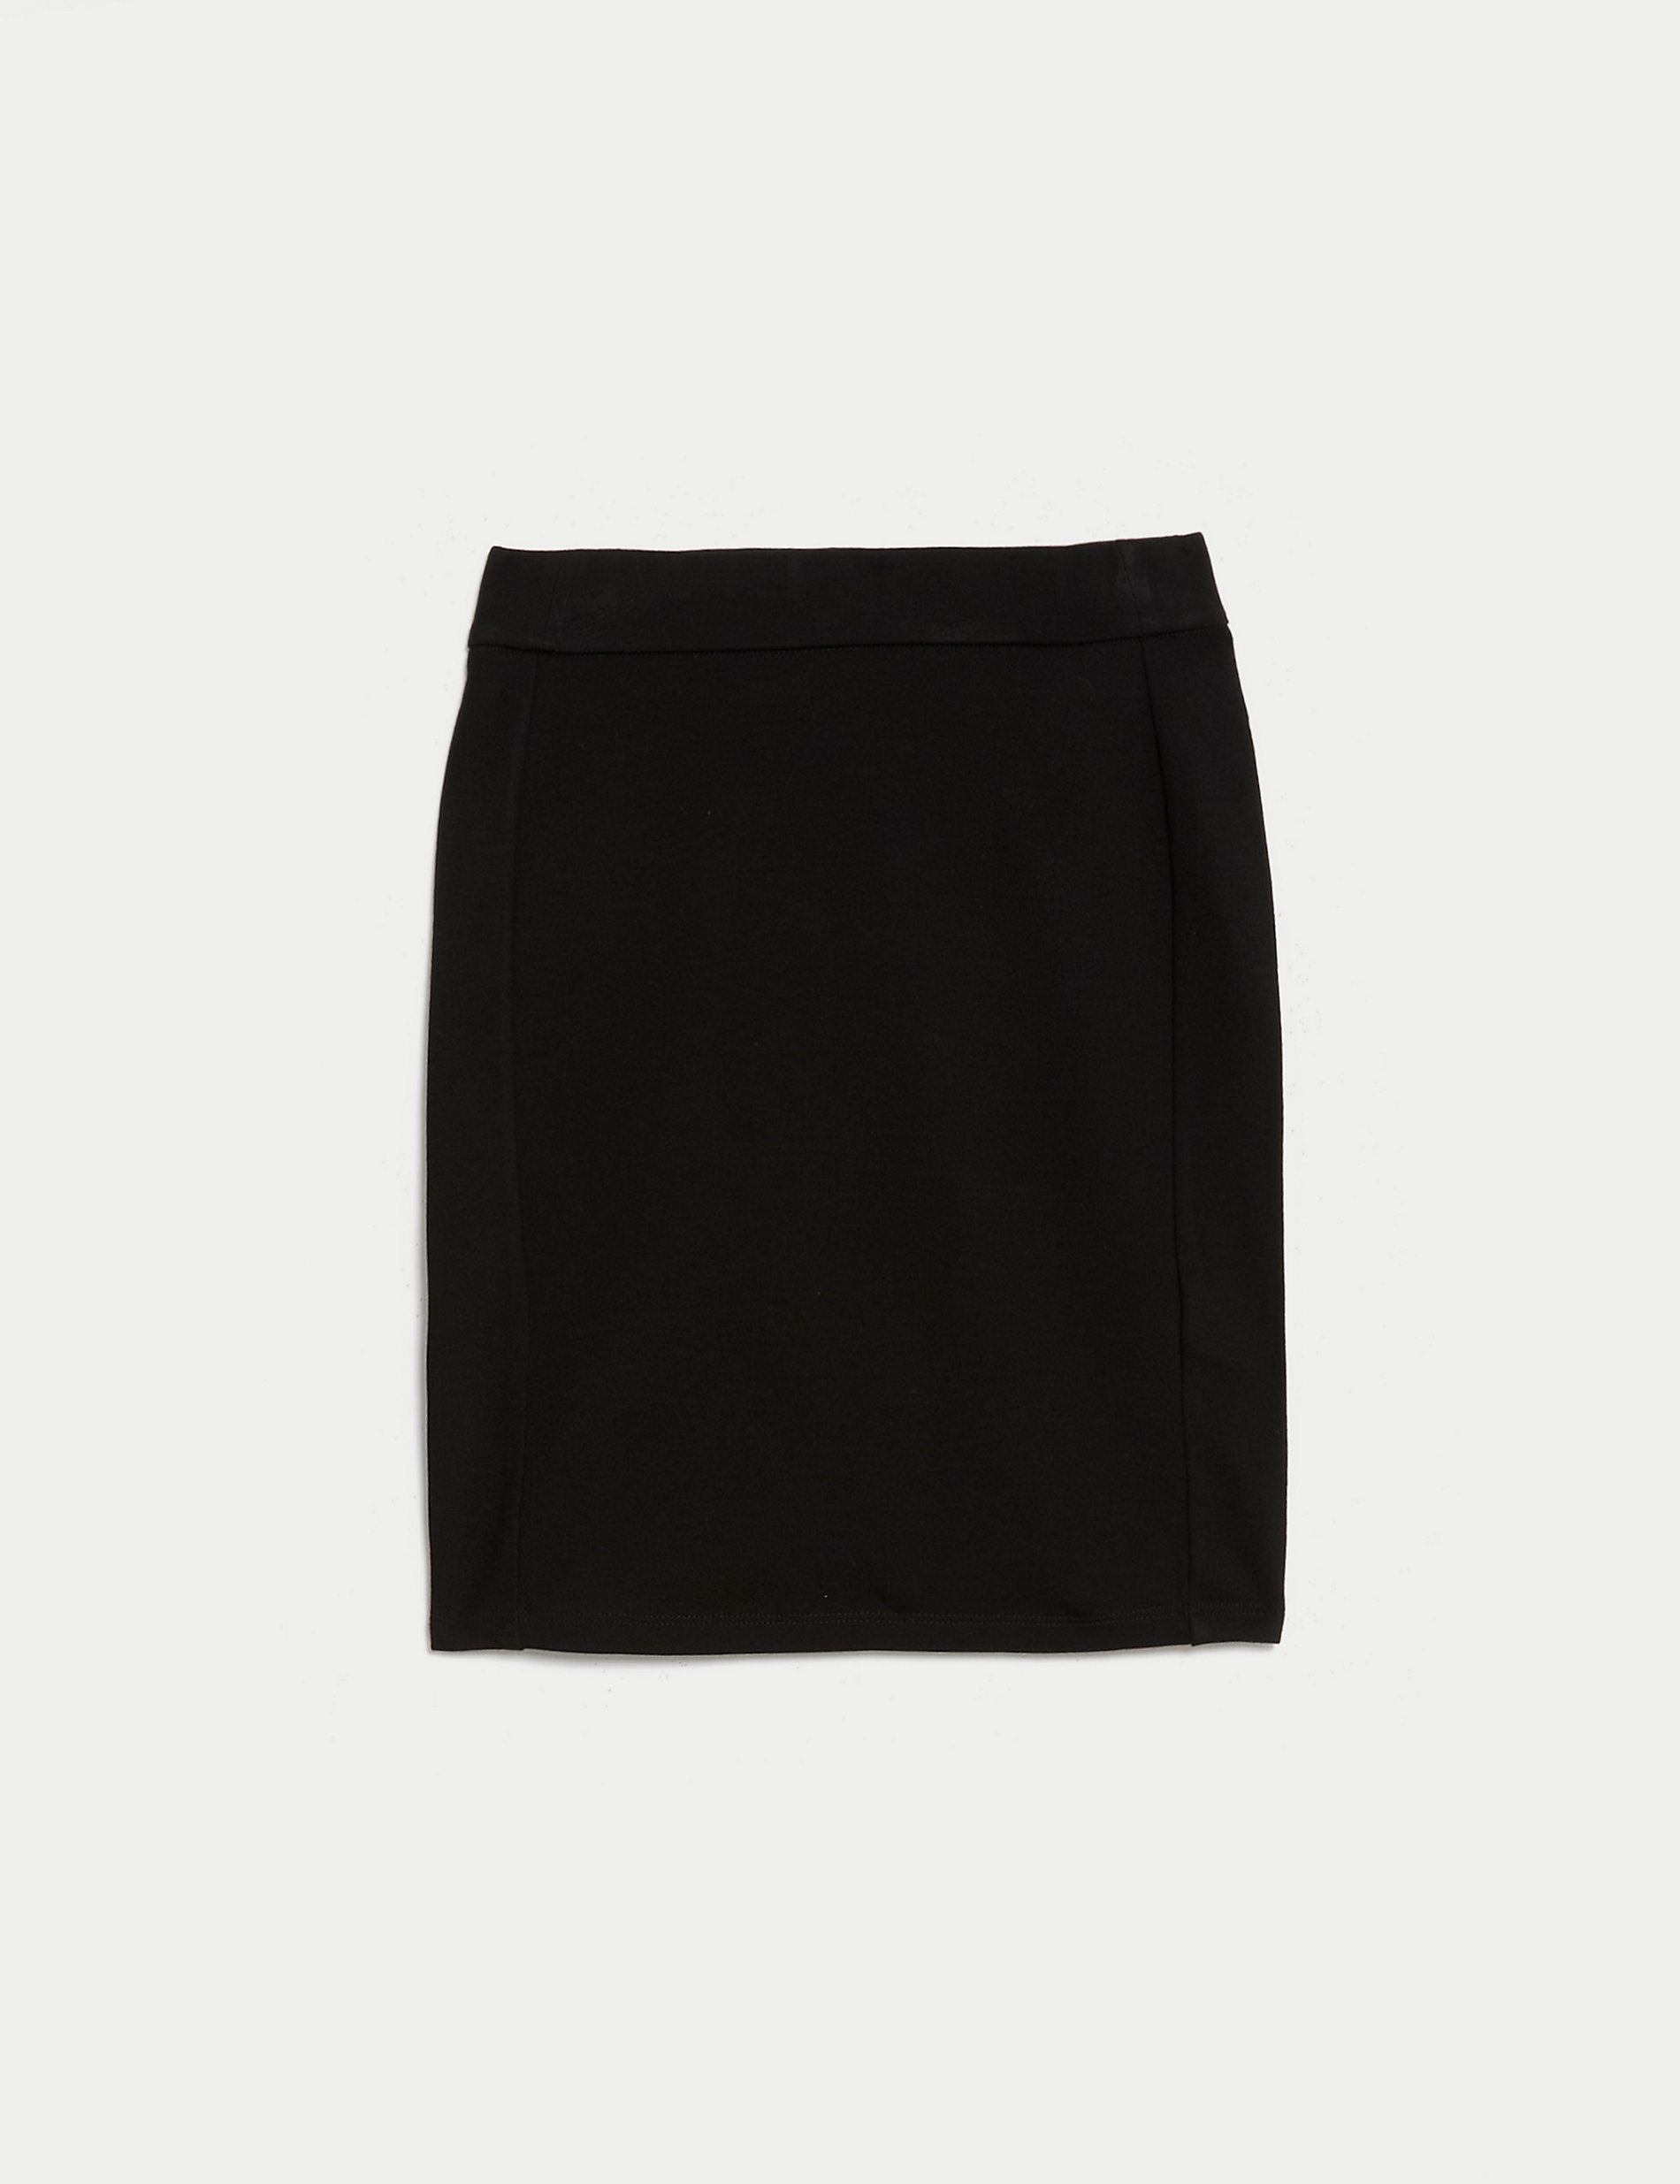 School Girls Short Tube School Skirt (9-18 Yrs)